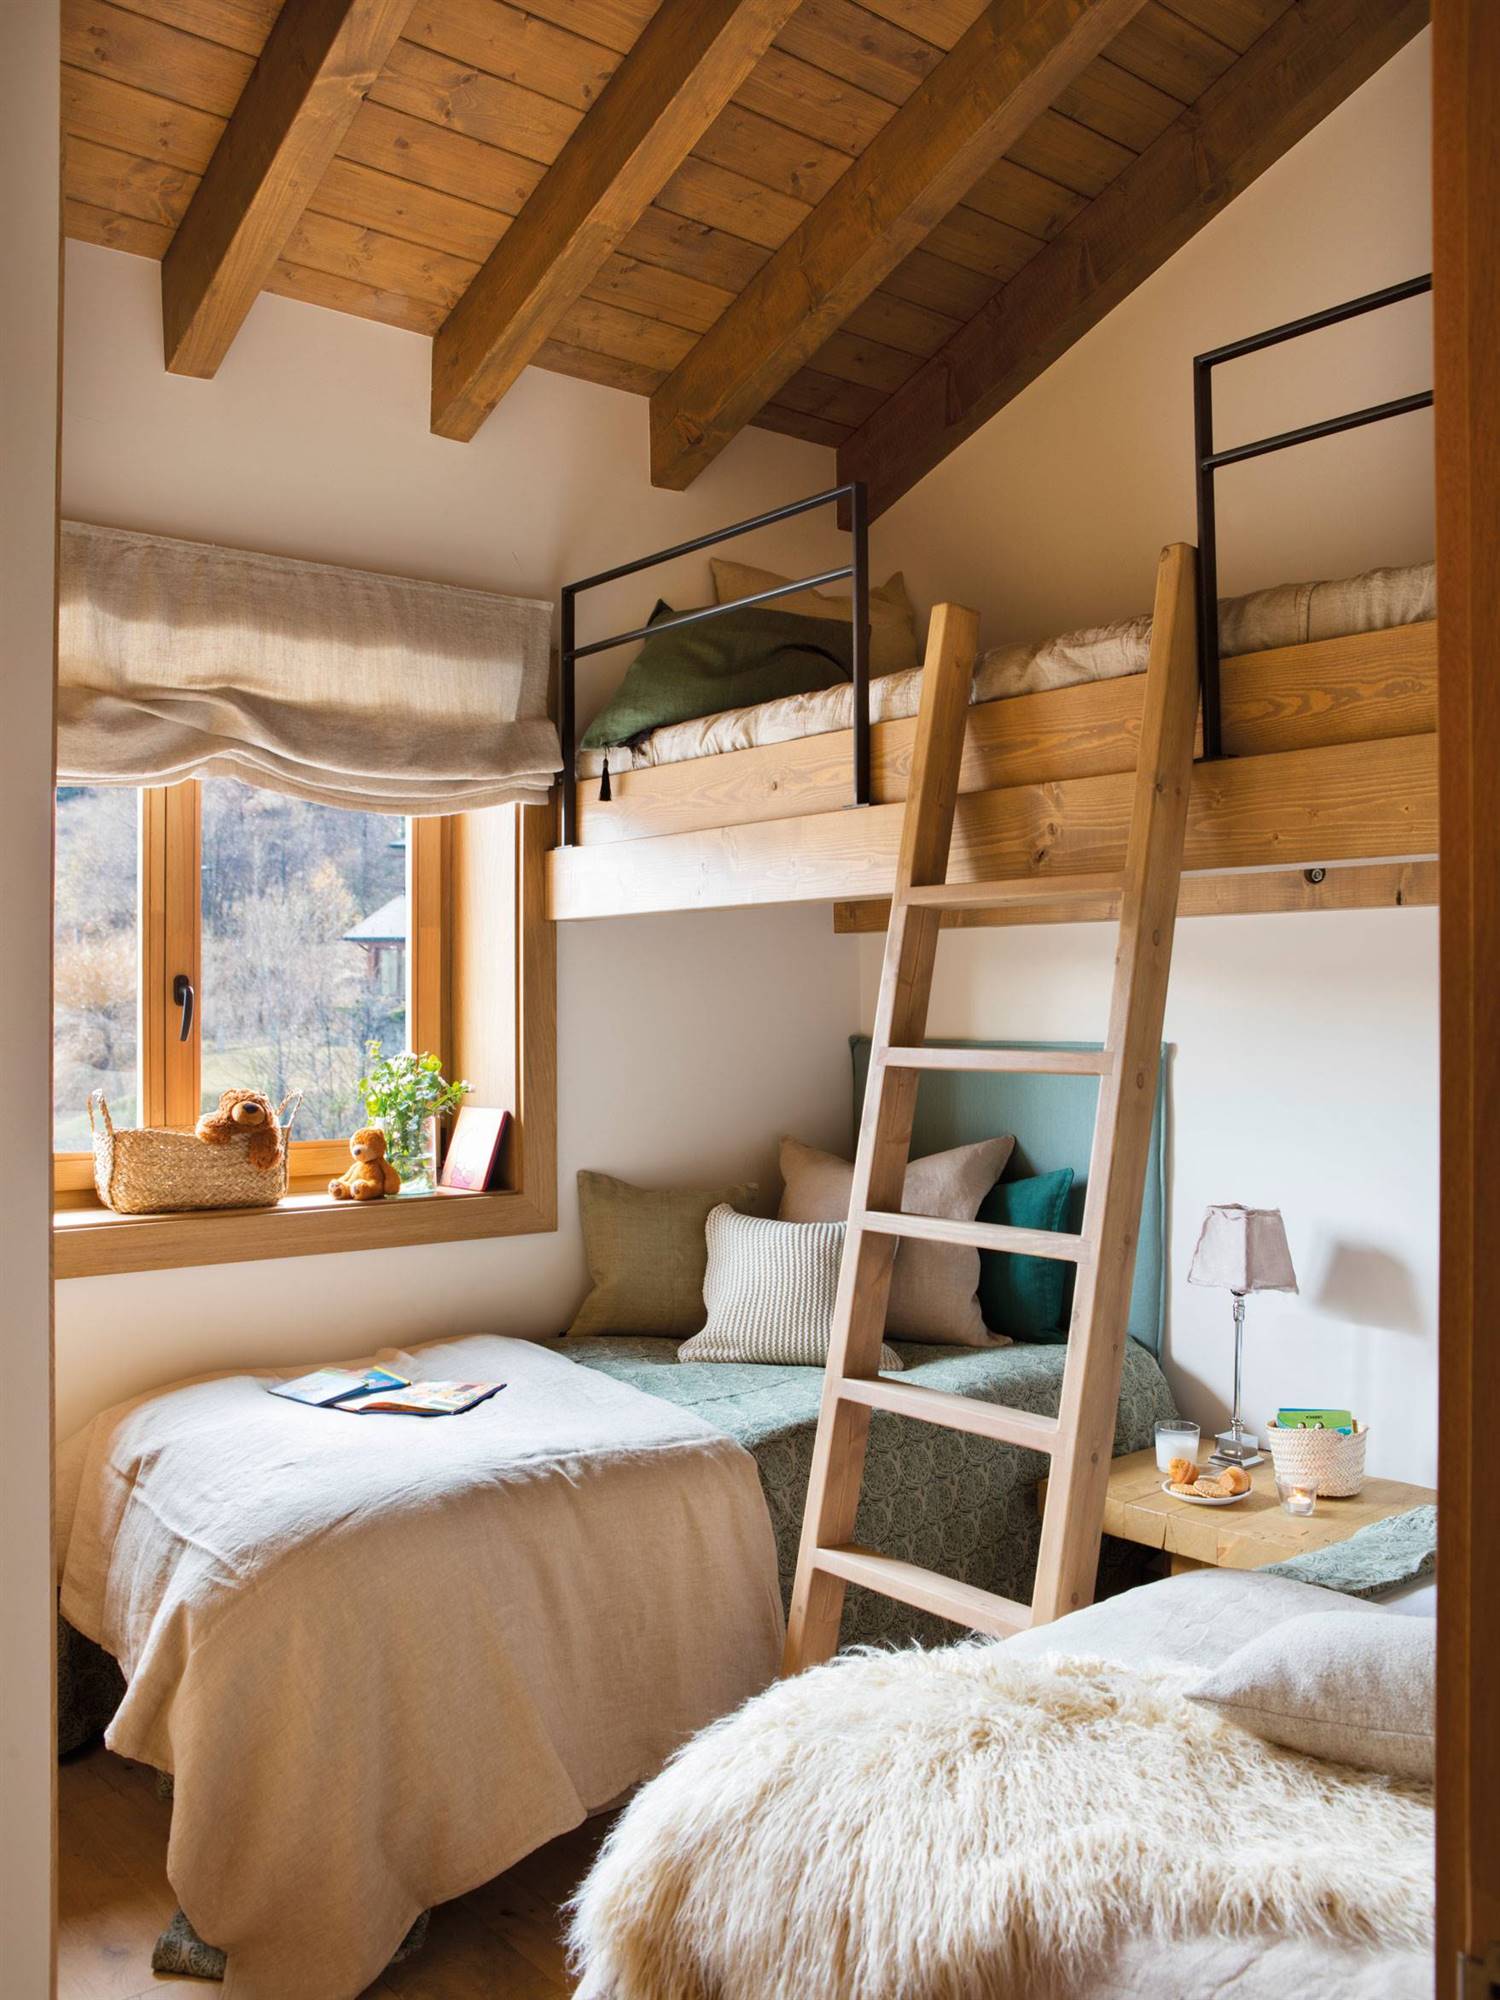 Dormitorio infantil de estilo rústico en madera con literas, escalera, en arena y gris.